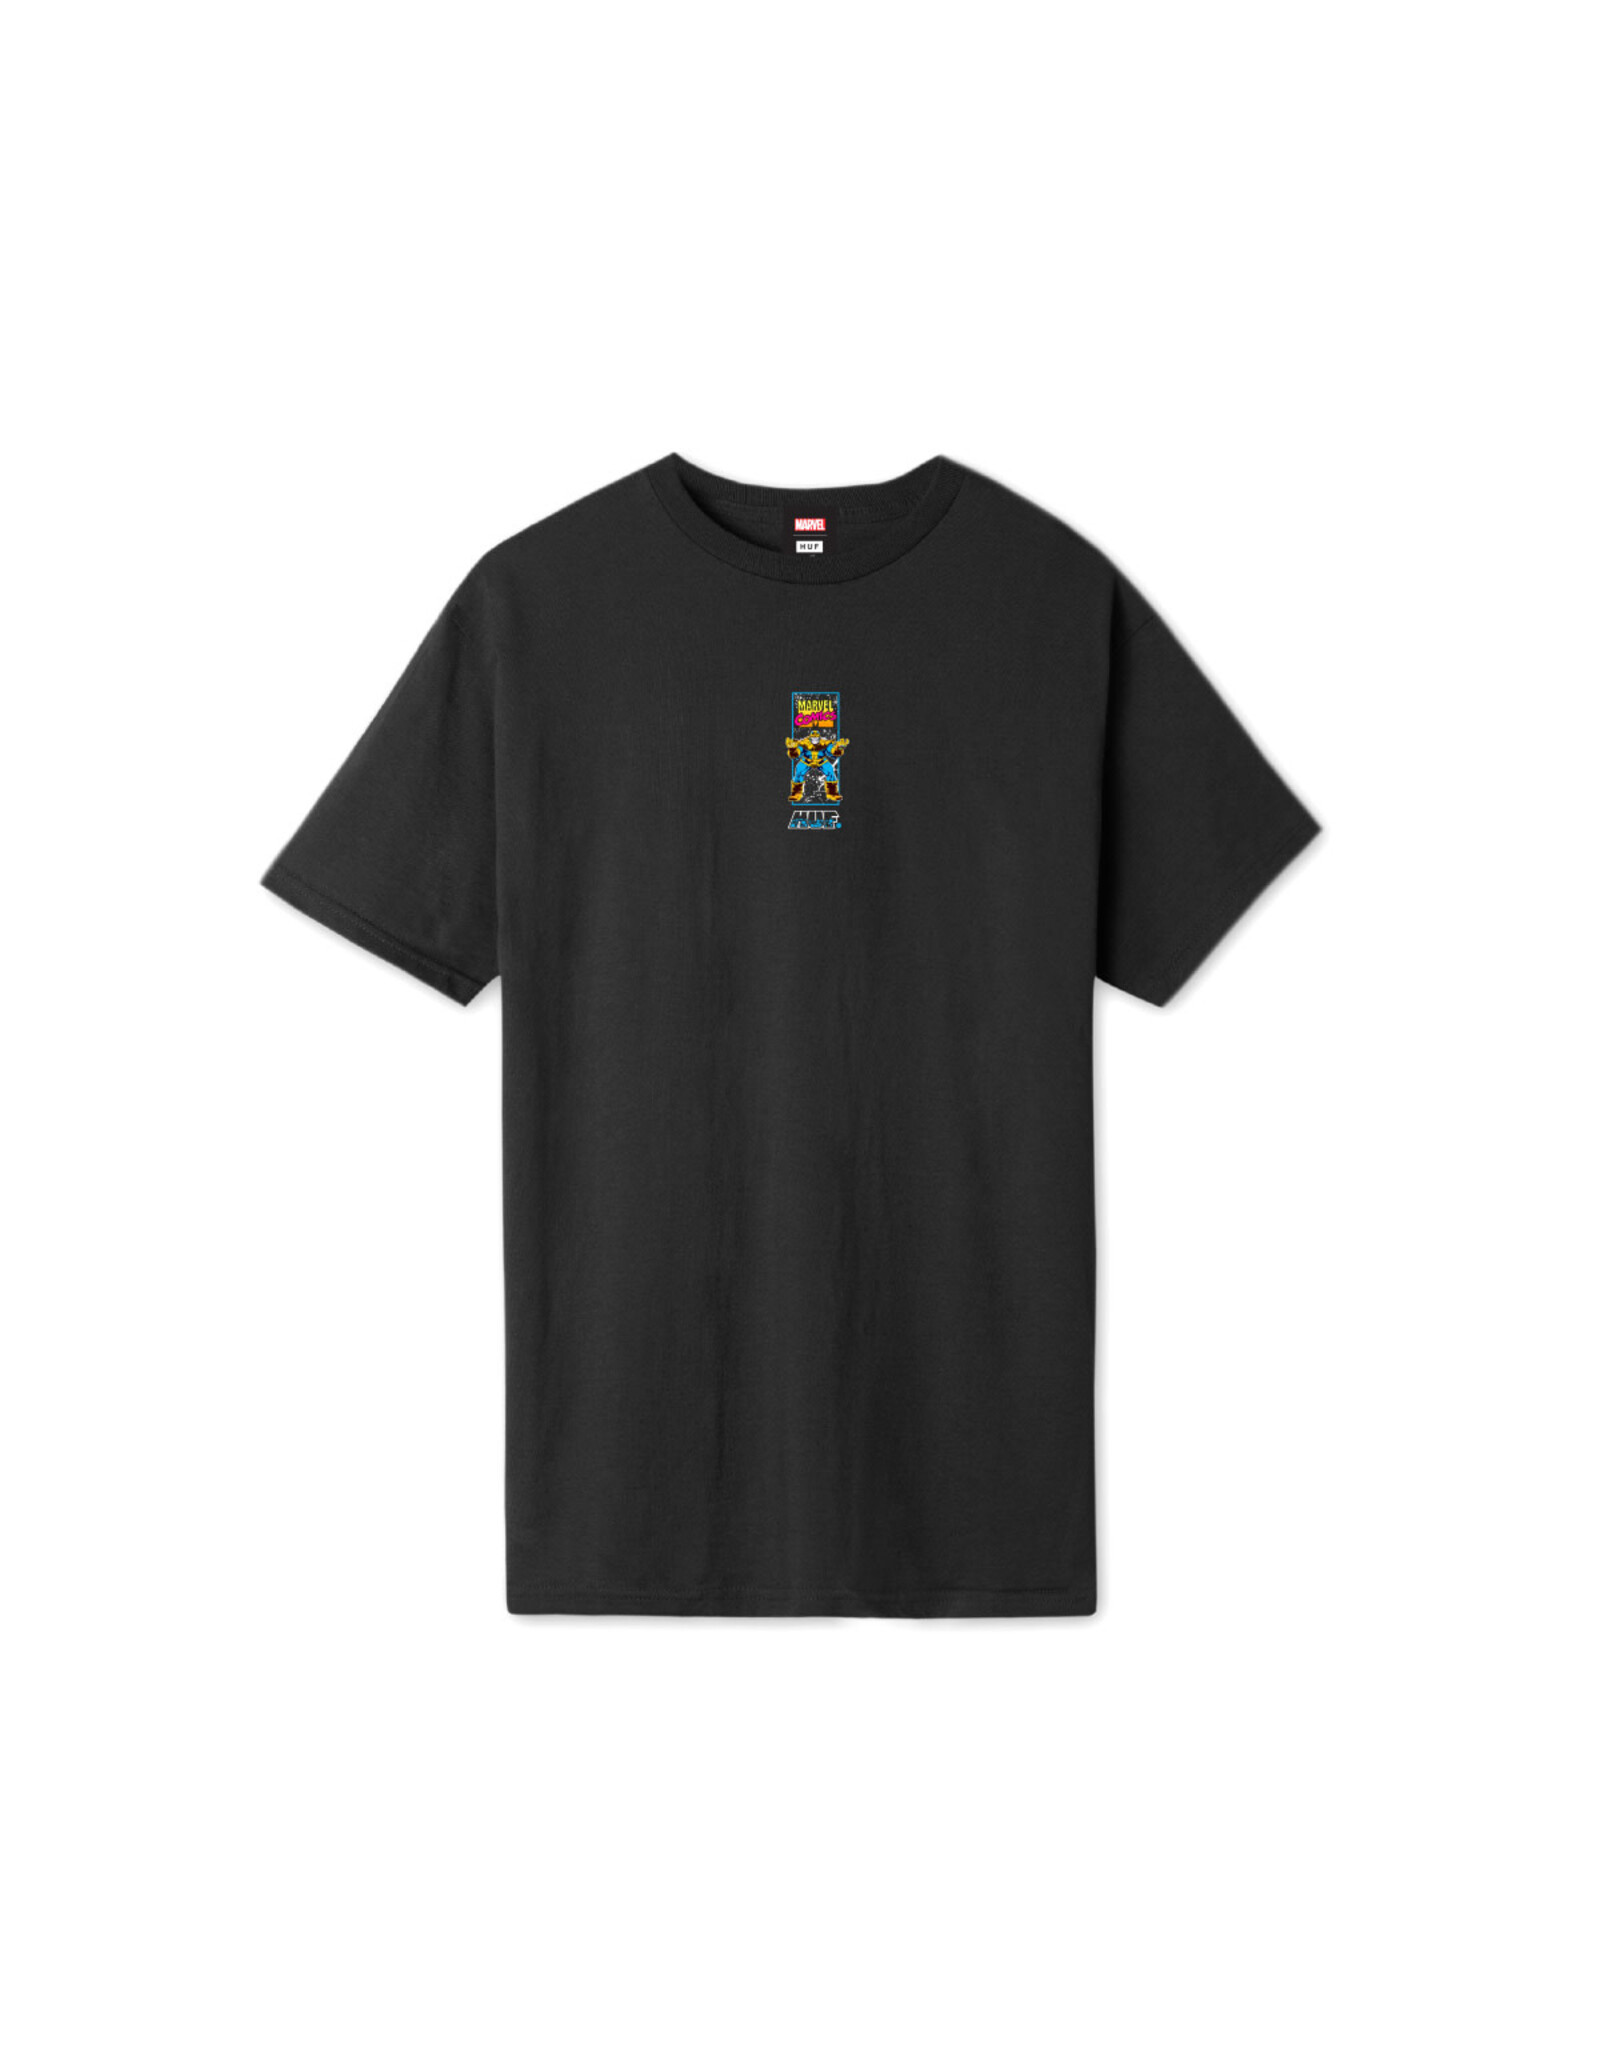 HUF Worldwide S/S OH Snap Tee Shirt